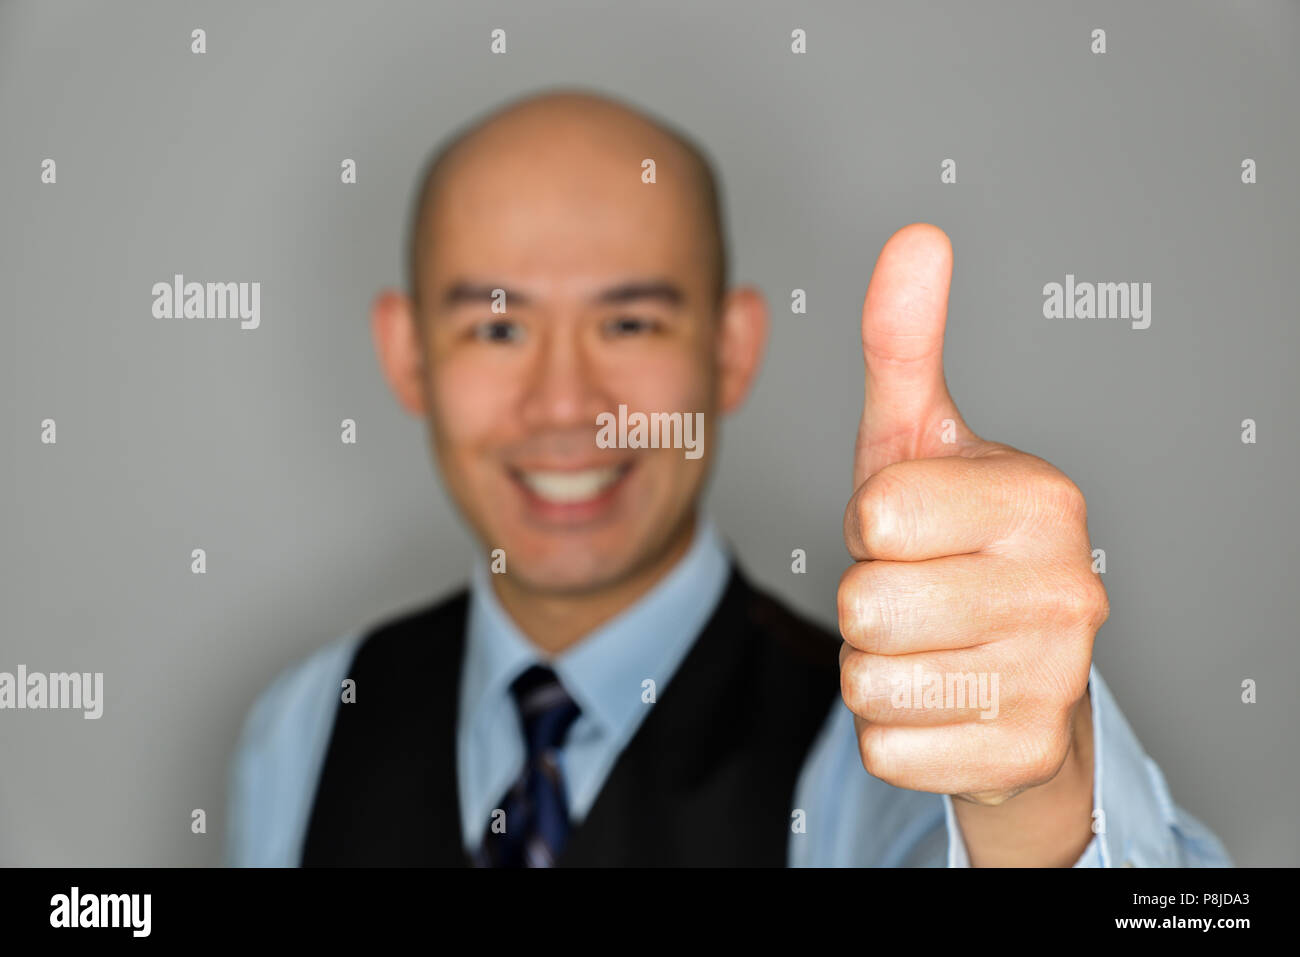 Homme d'affaires trouble clair offrant Thumbs Up et sourire - Notion de réussite, aimant et bon travail Banque D'Images